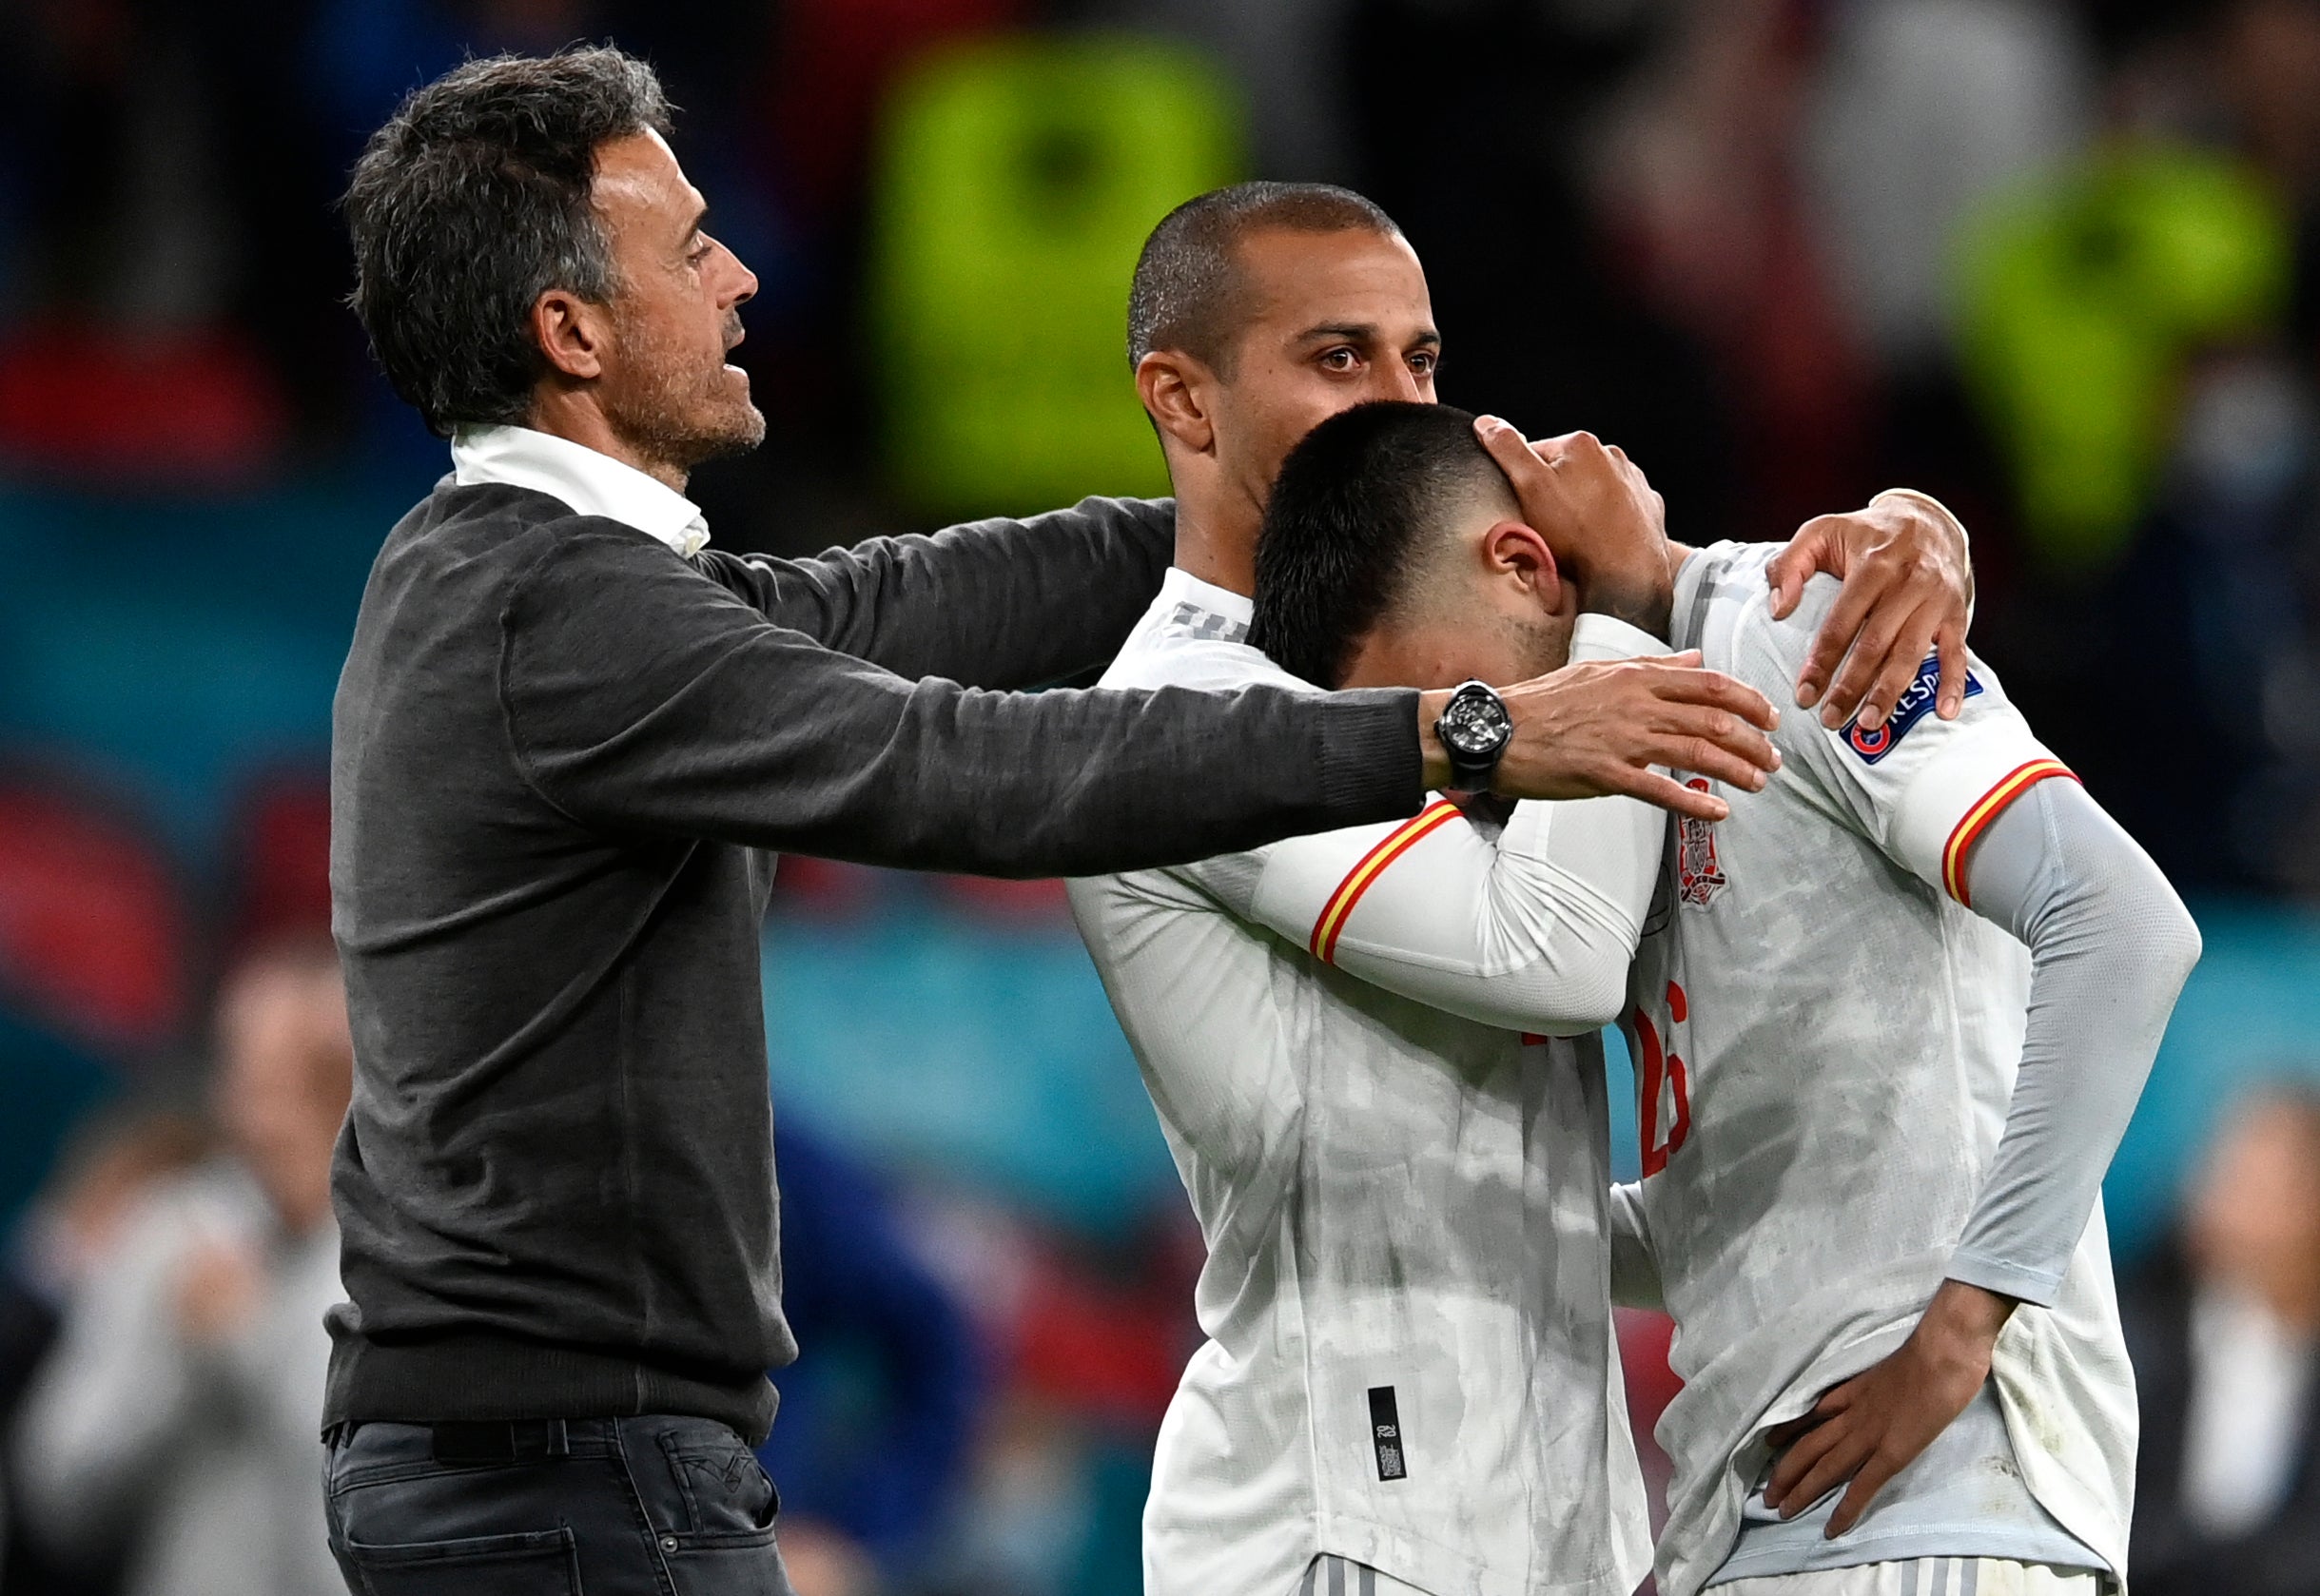 Luis Enrique, left, consoles his beaten players